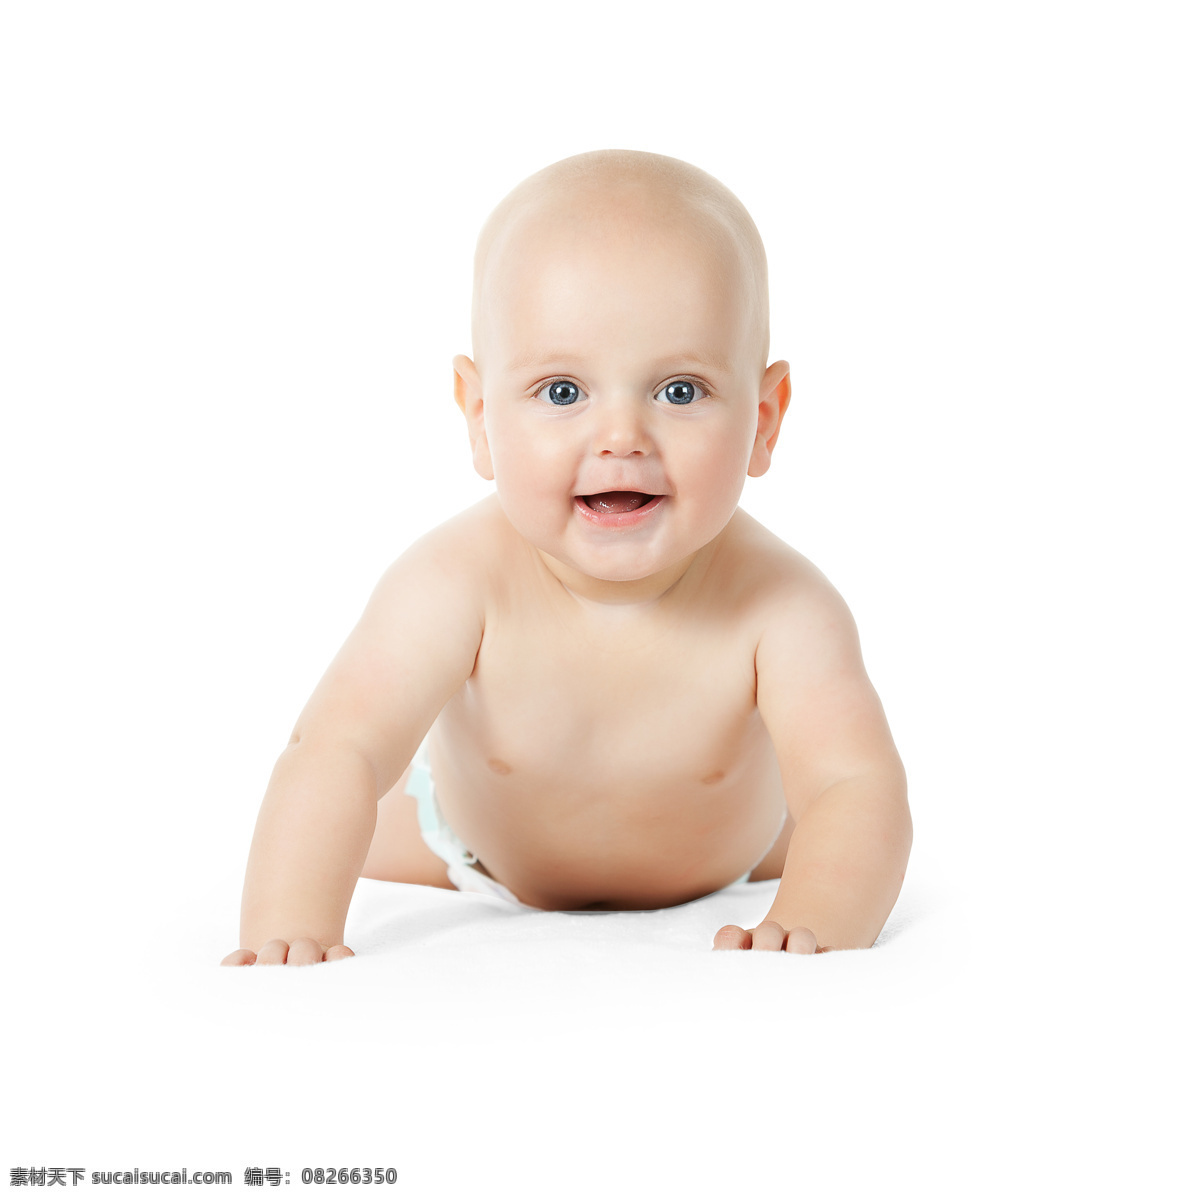 可爱 外国 男婴 婴儿 外国婴儿 微笑 儿童图片 人物图片